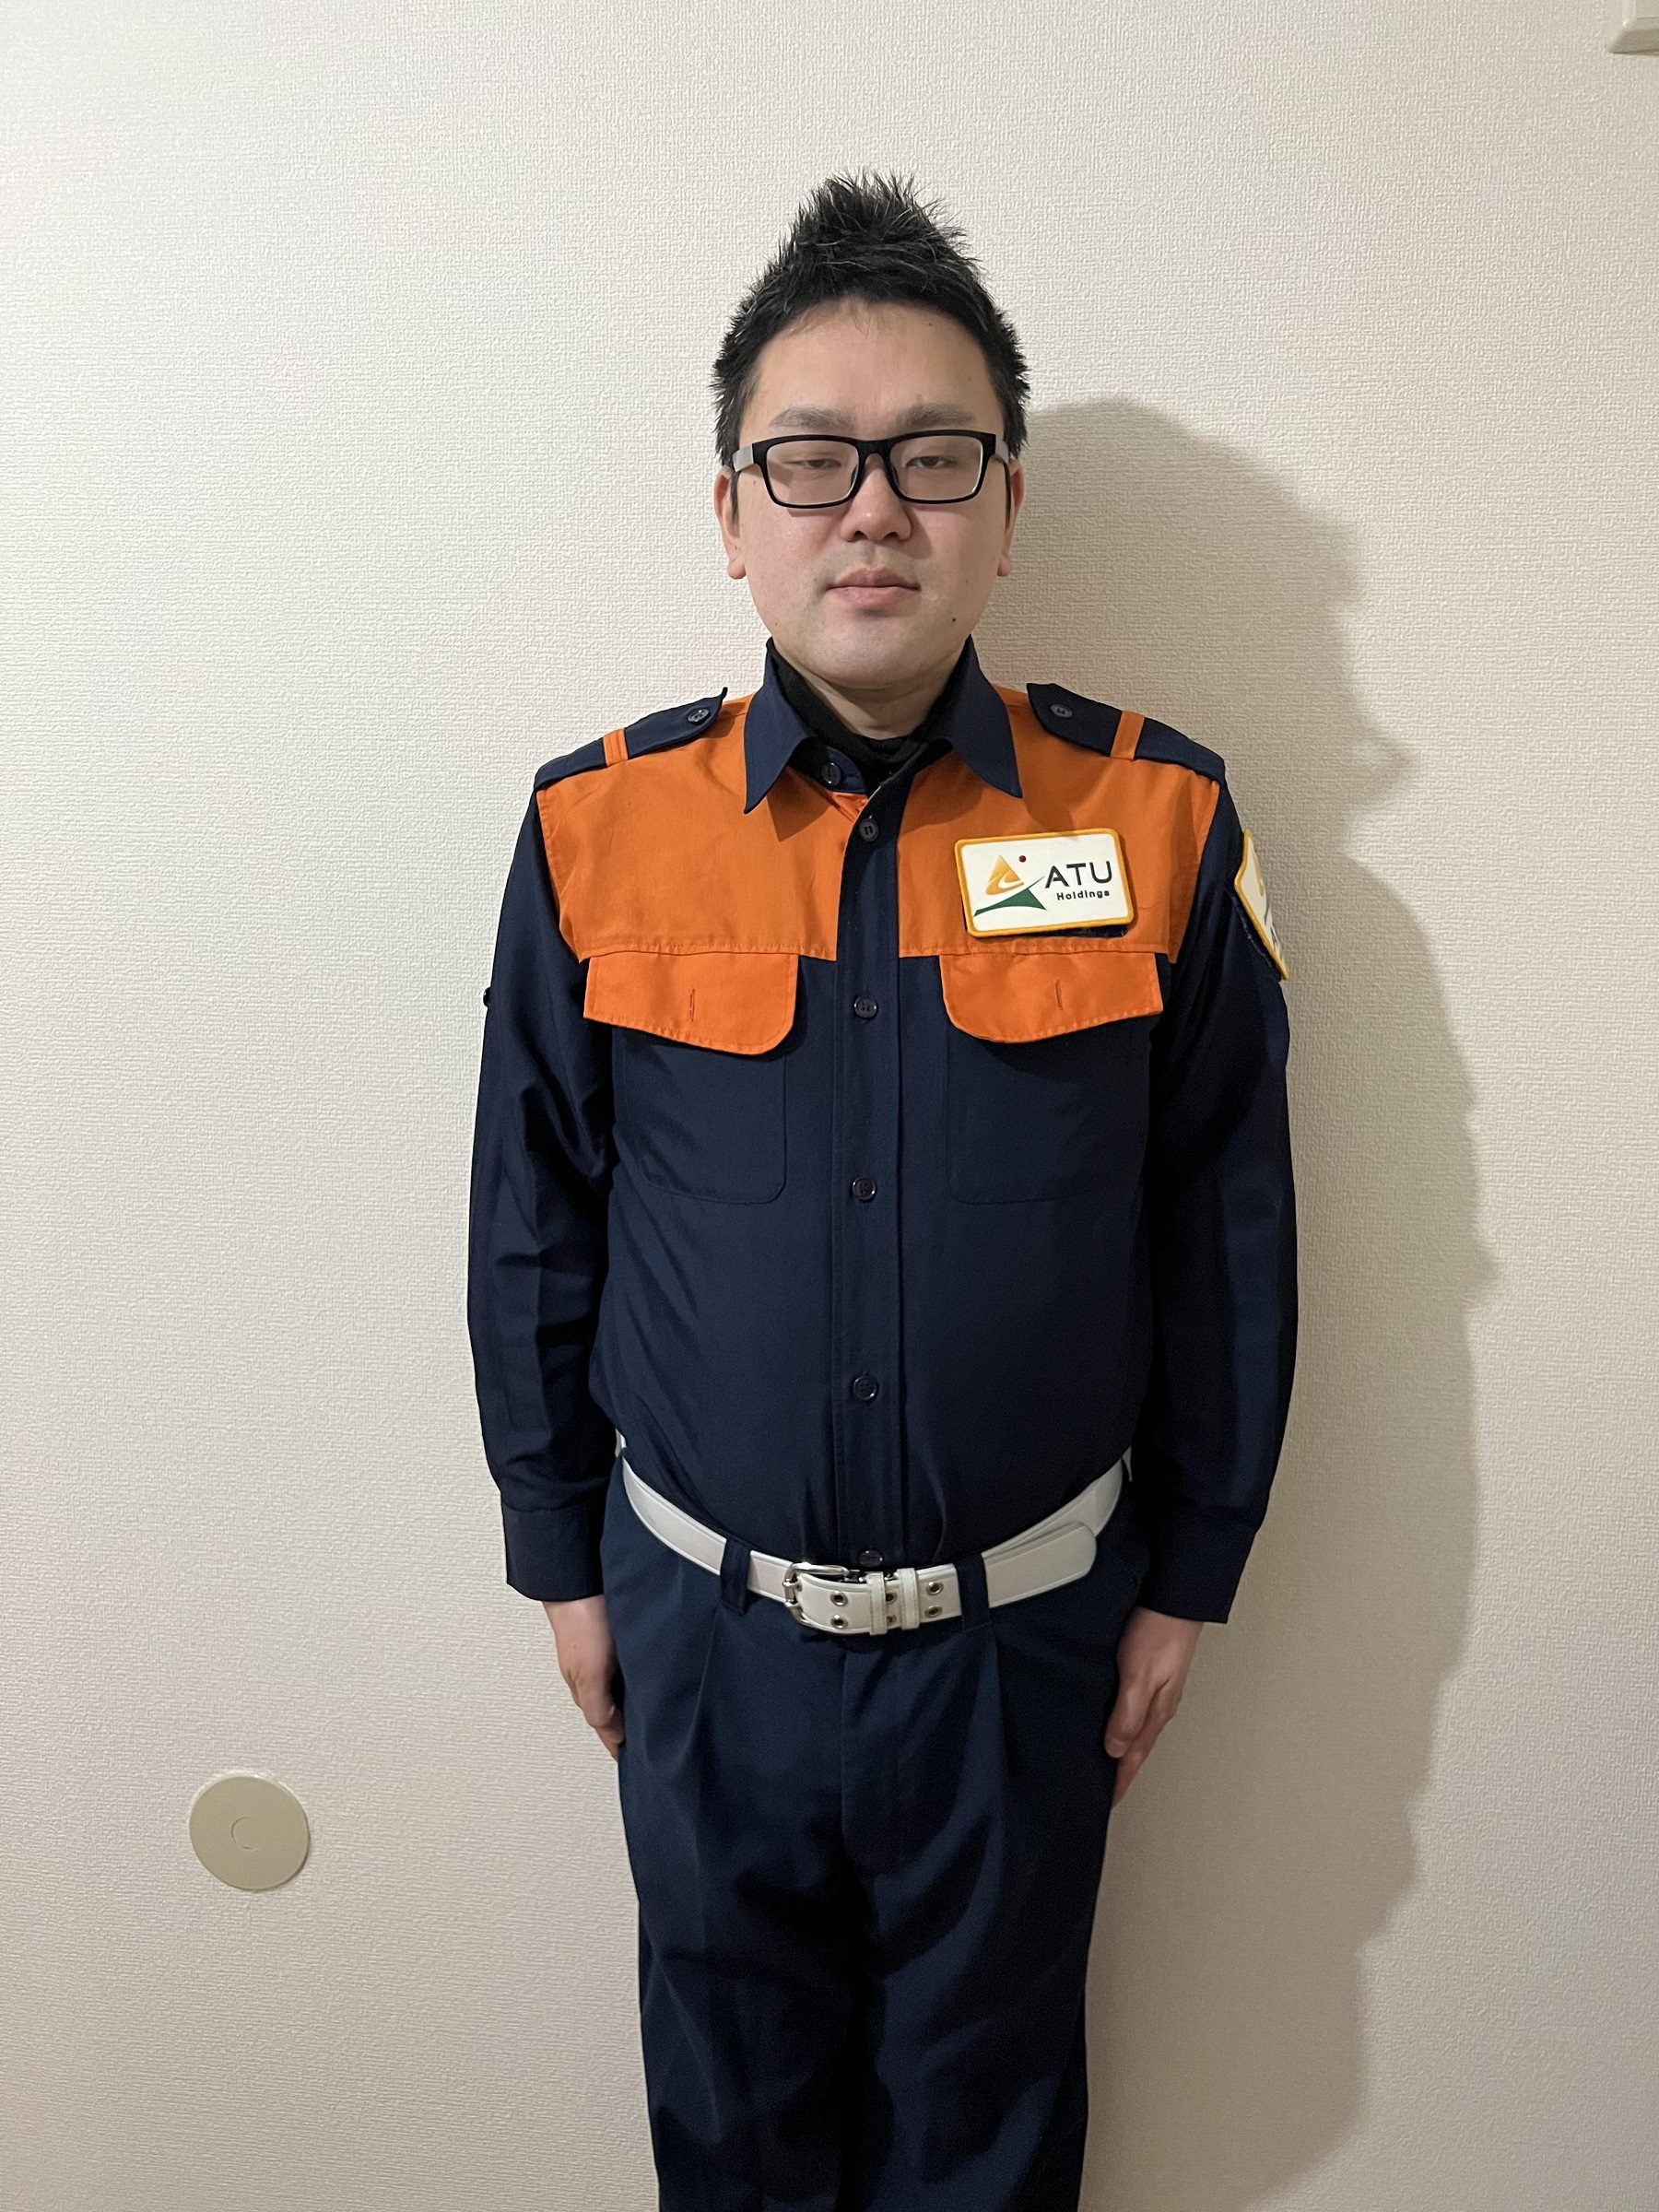 ATU　福岡　警備　制服　正面